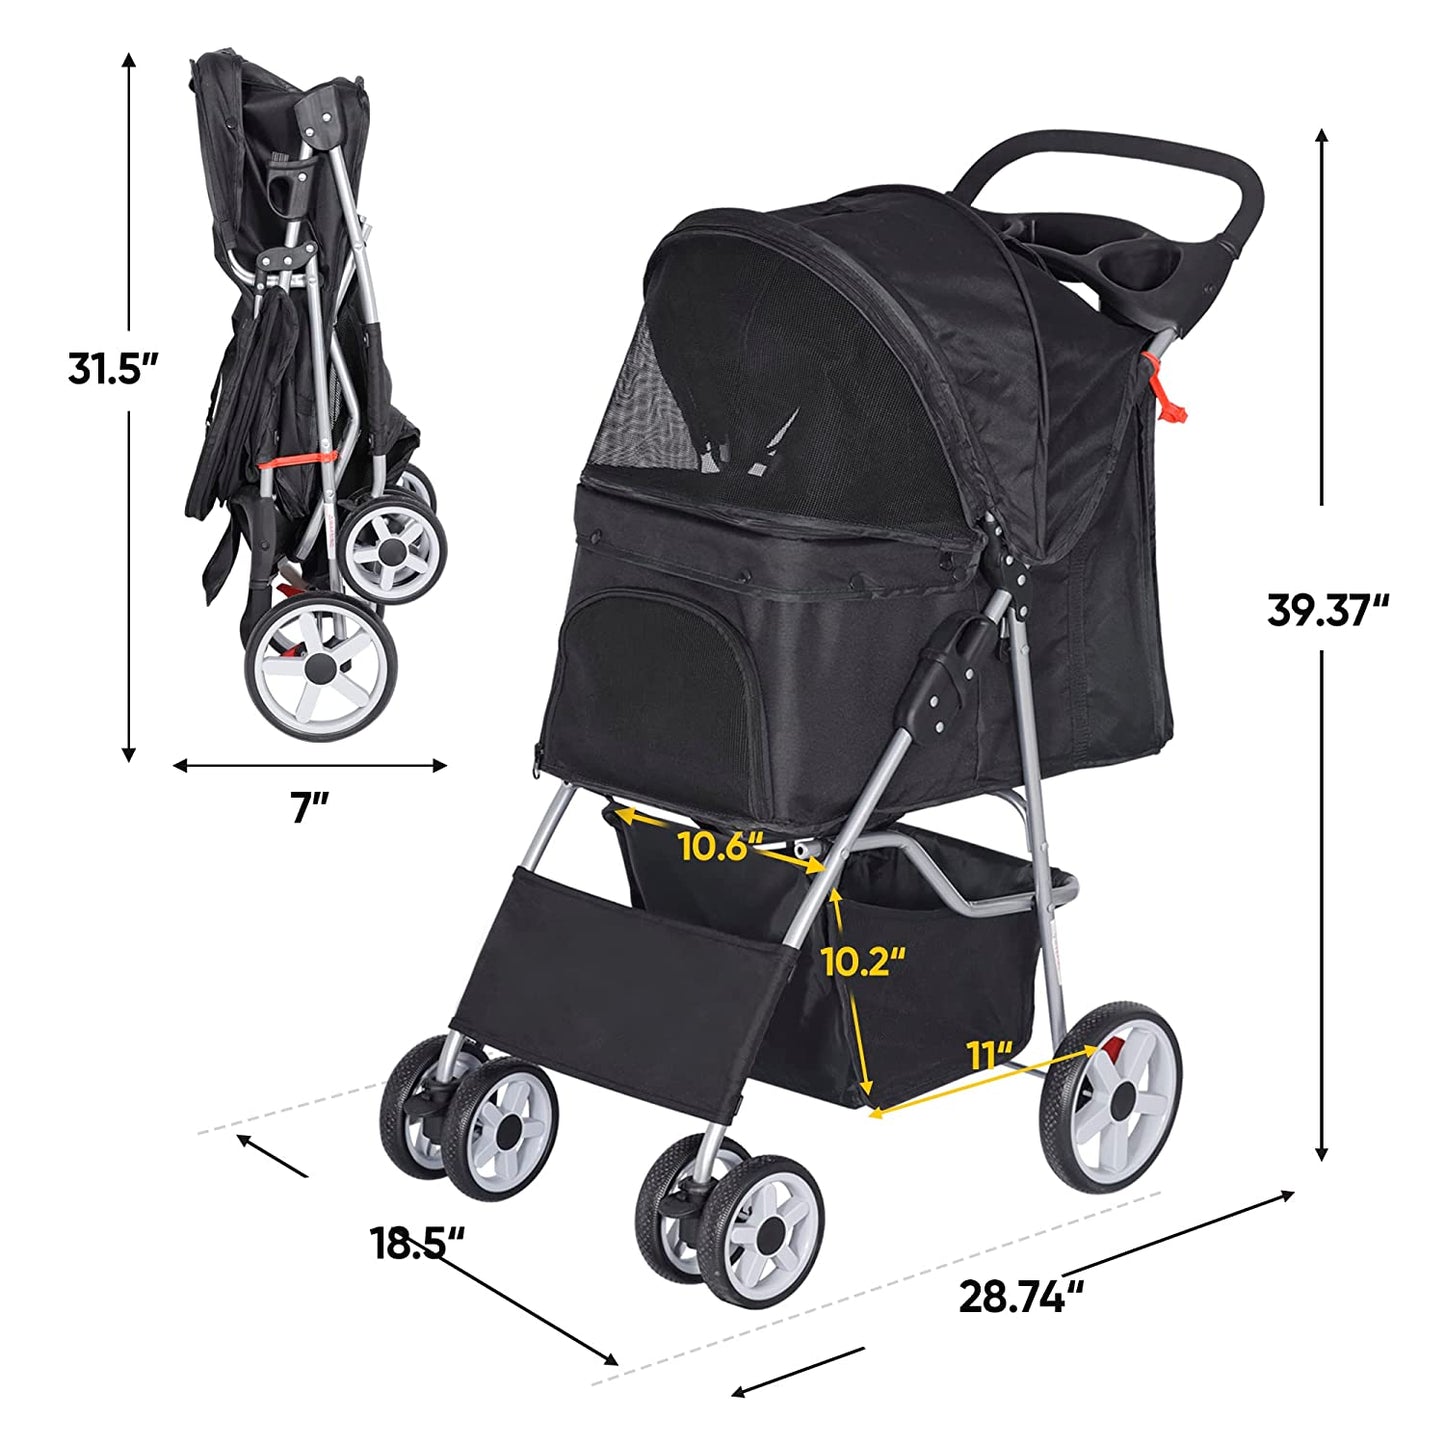 Foldable Pet Stroller, Cat/Dog Stroller with 4 Wheel, Pet Travel Carrier Strolling Cart with Storage Basket, Cup Holder, Black